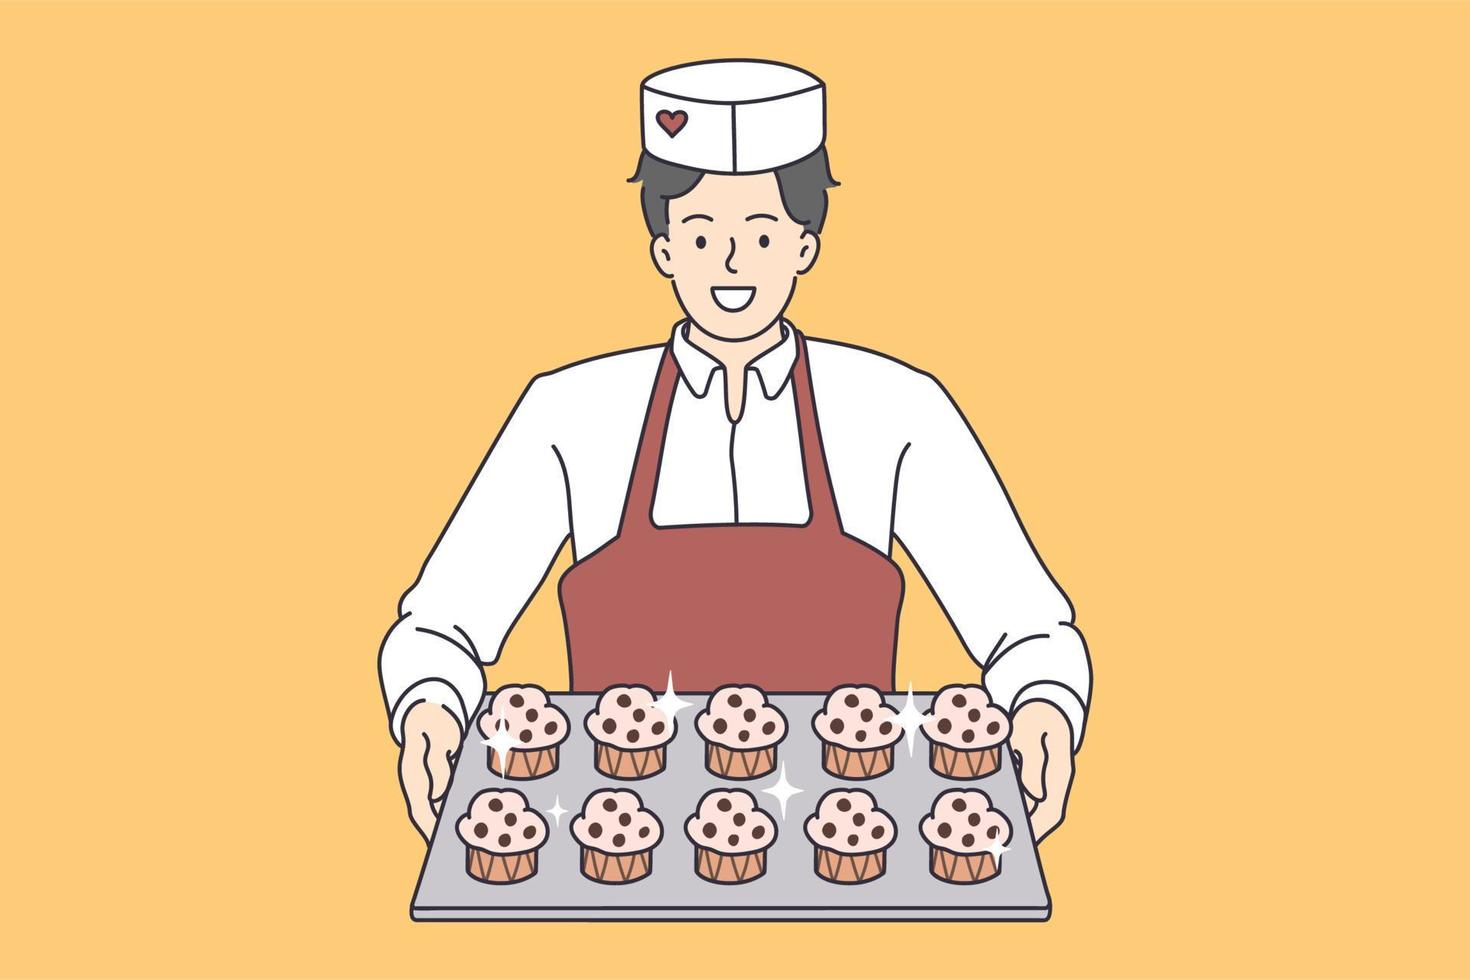 trabalhador de pastelaria com bandeja de cupcakes. ilustração em vetor conceito de padeiro de sobremesas servindo bolinhos doces.